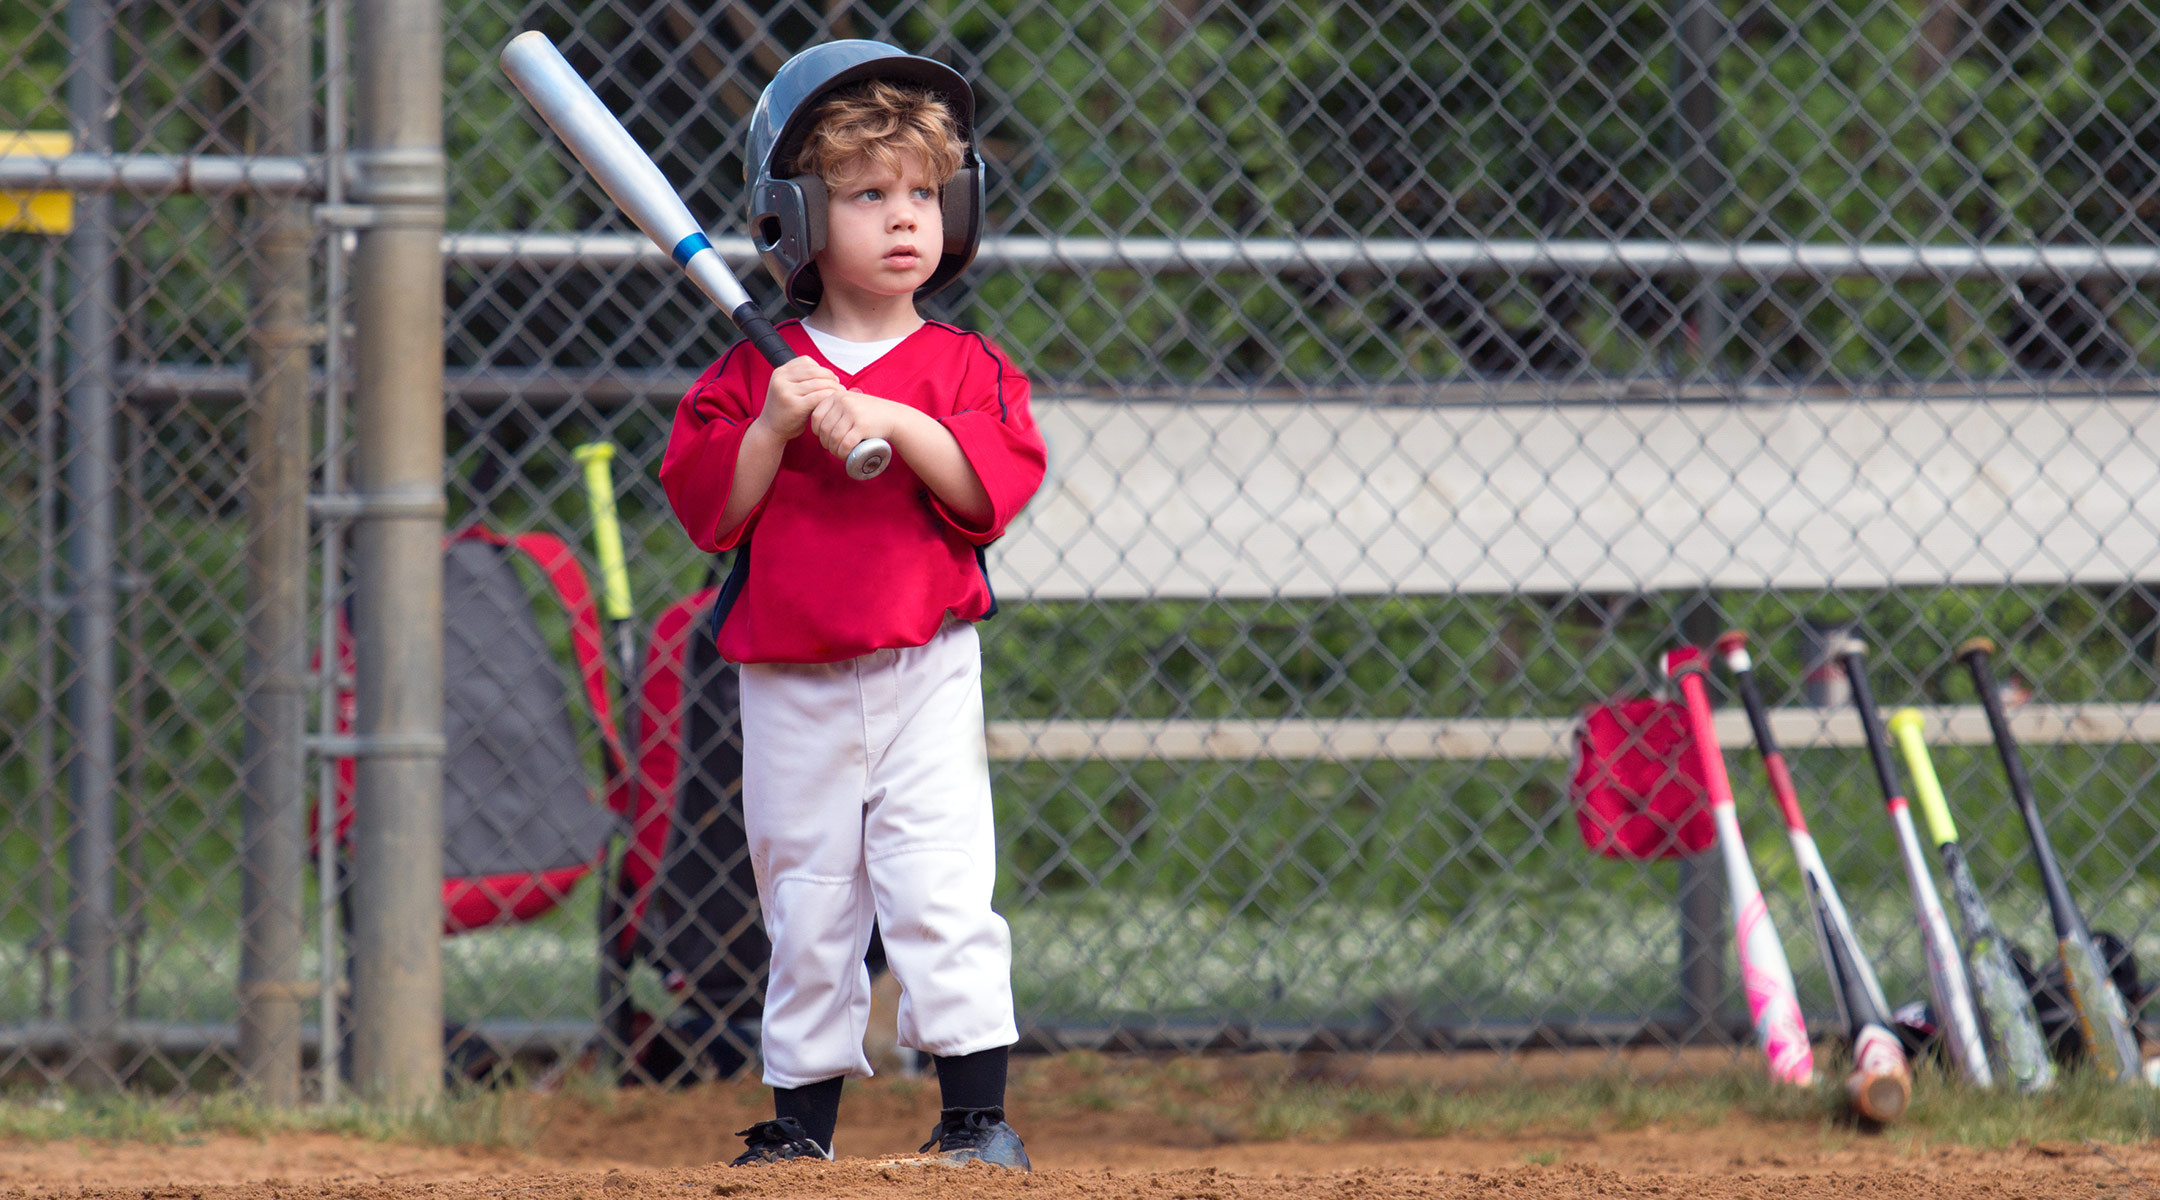 small child playing baseball at bat